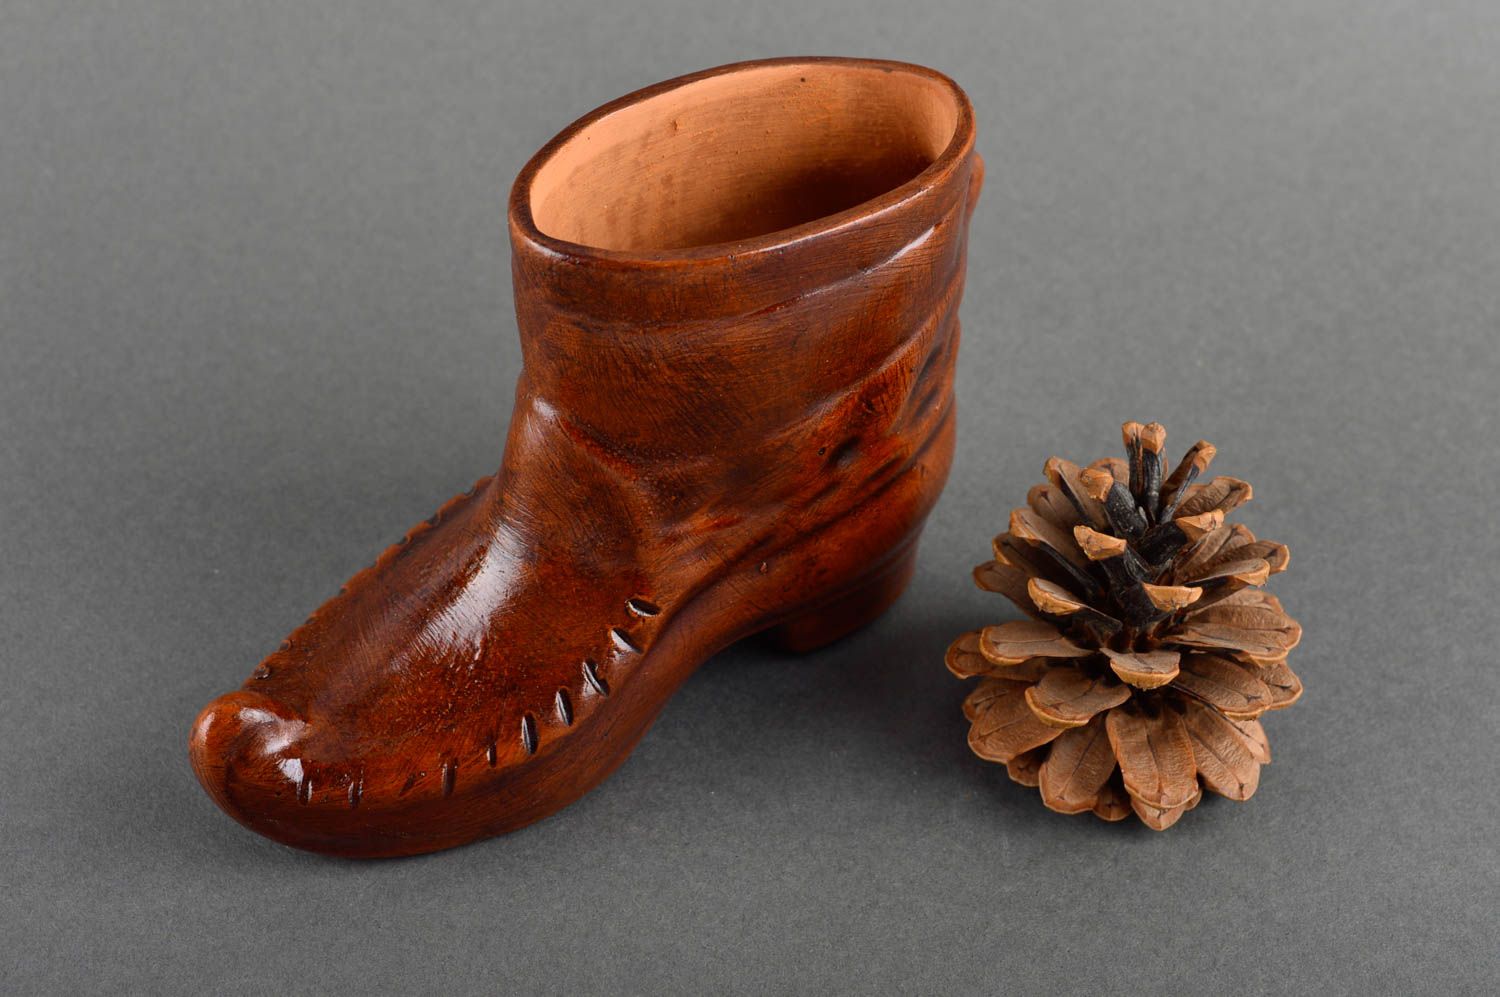 8 oz decorative boot shape ceramic brown vessel for home décor 0,5 lb photo 1